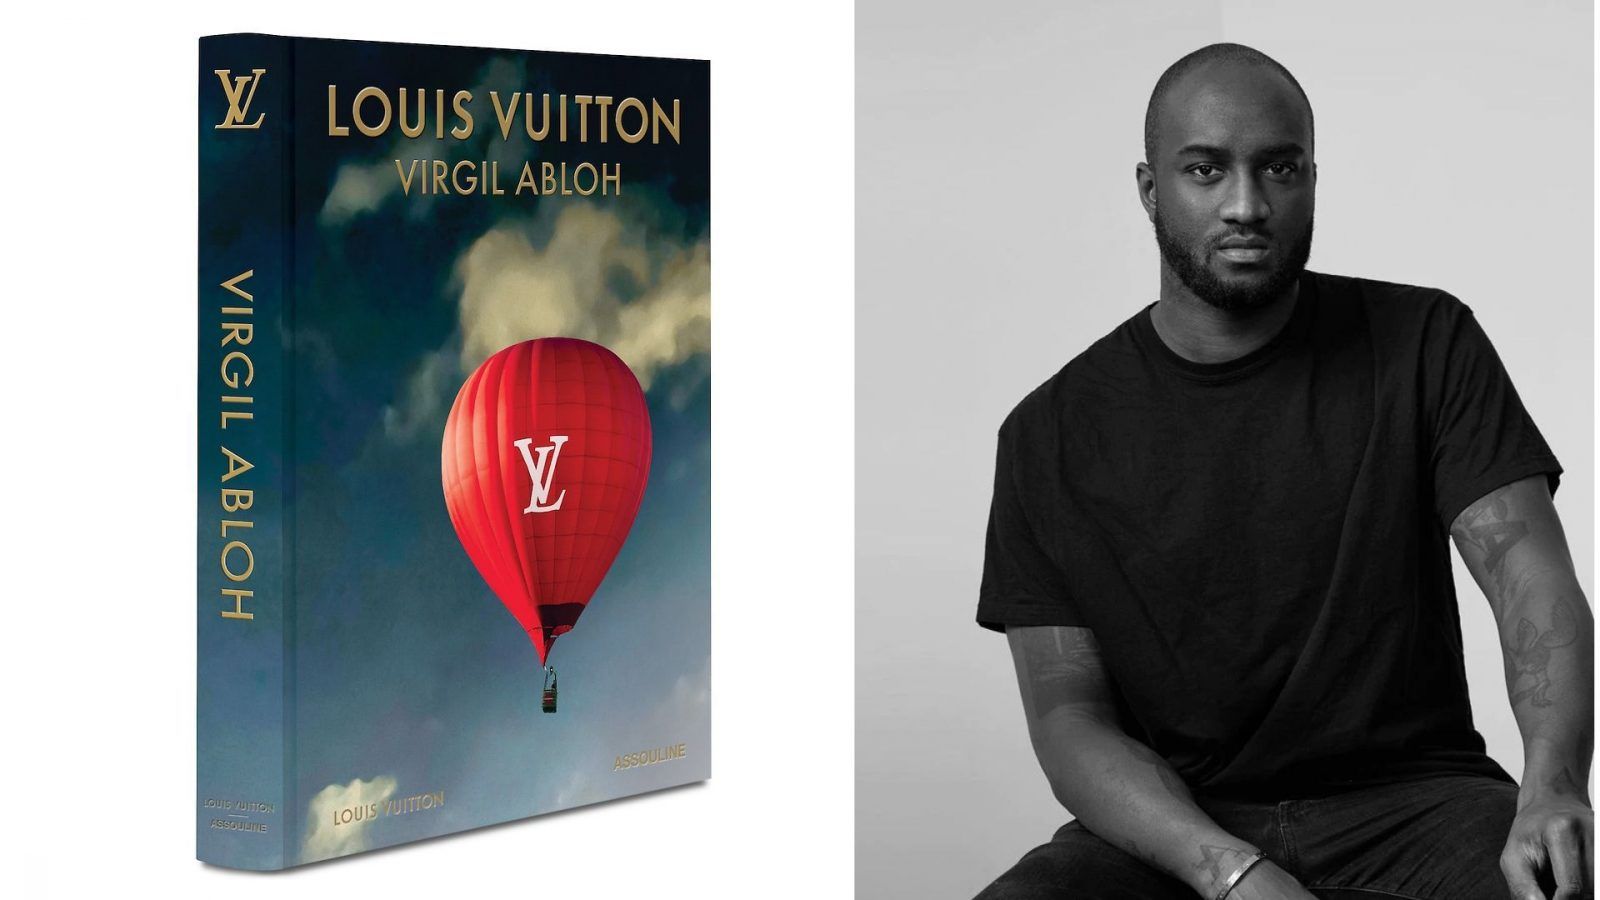 Louis Vuitton Launches Book About Virgil Abloh